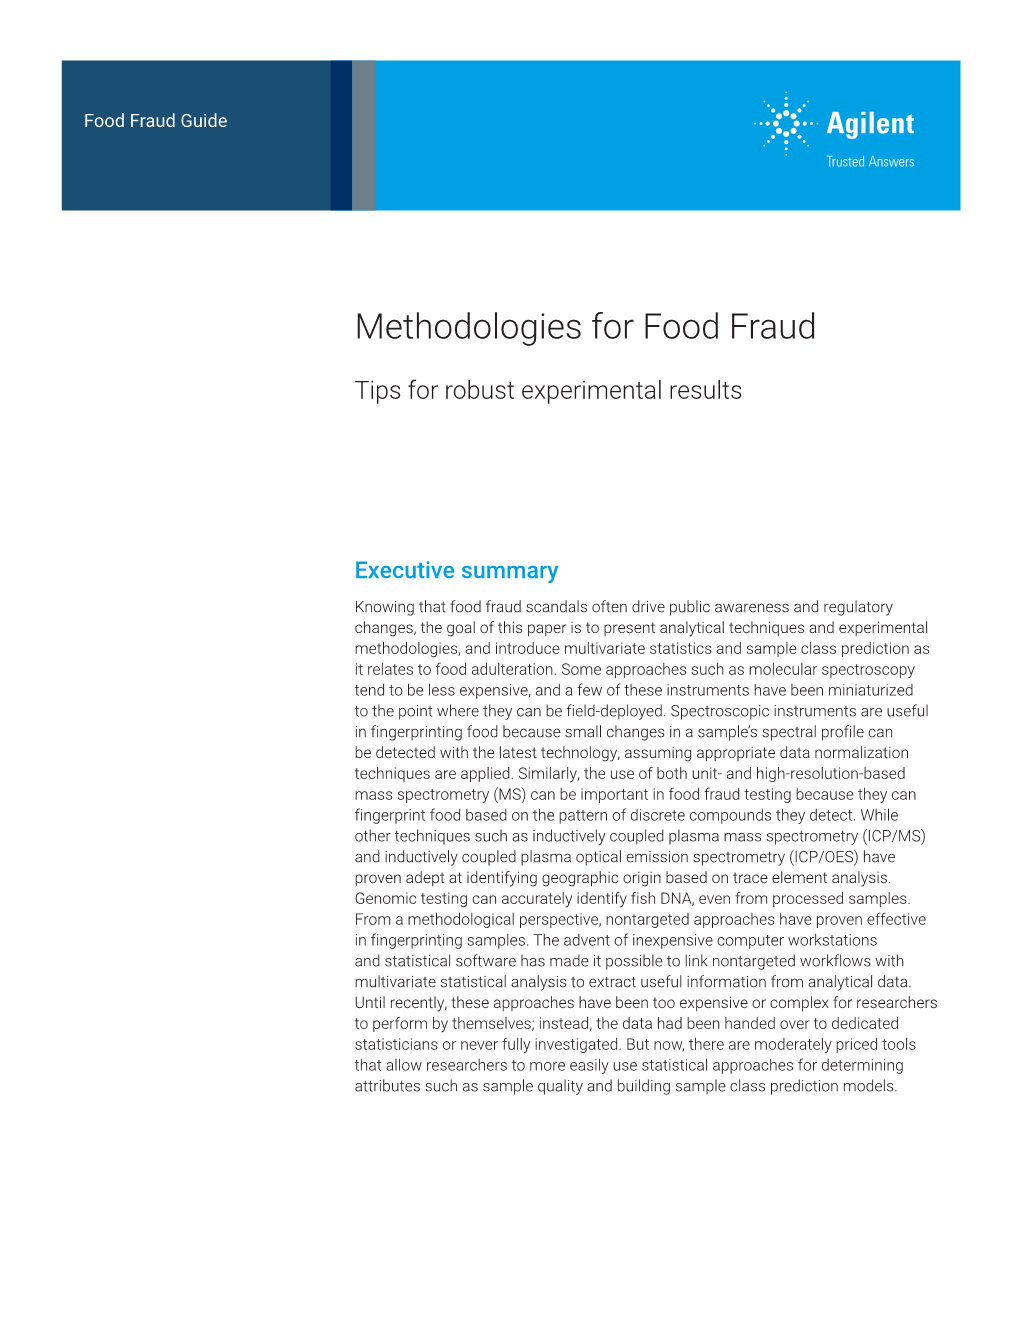 Methodologies for Food Fraud